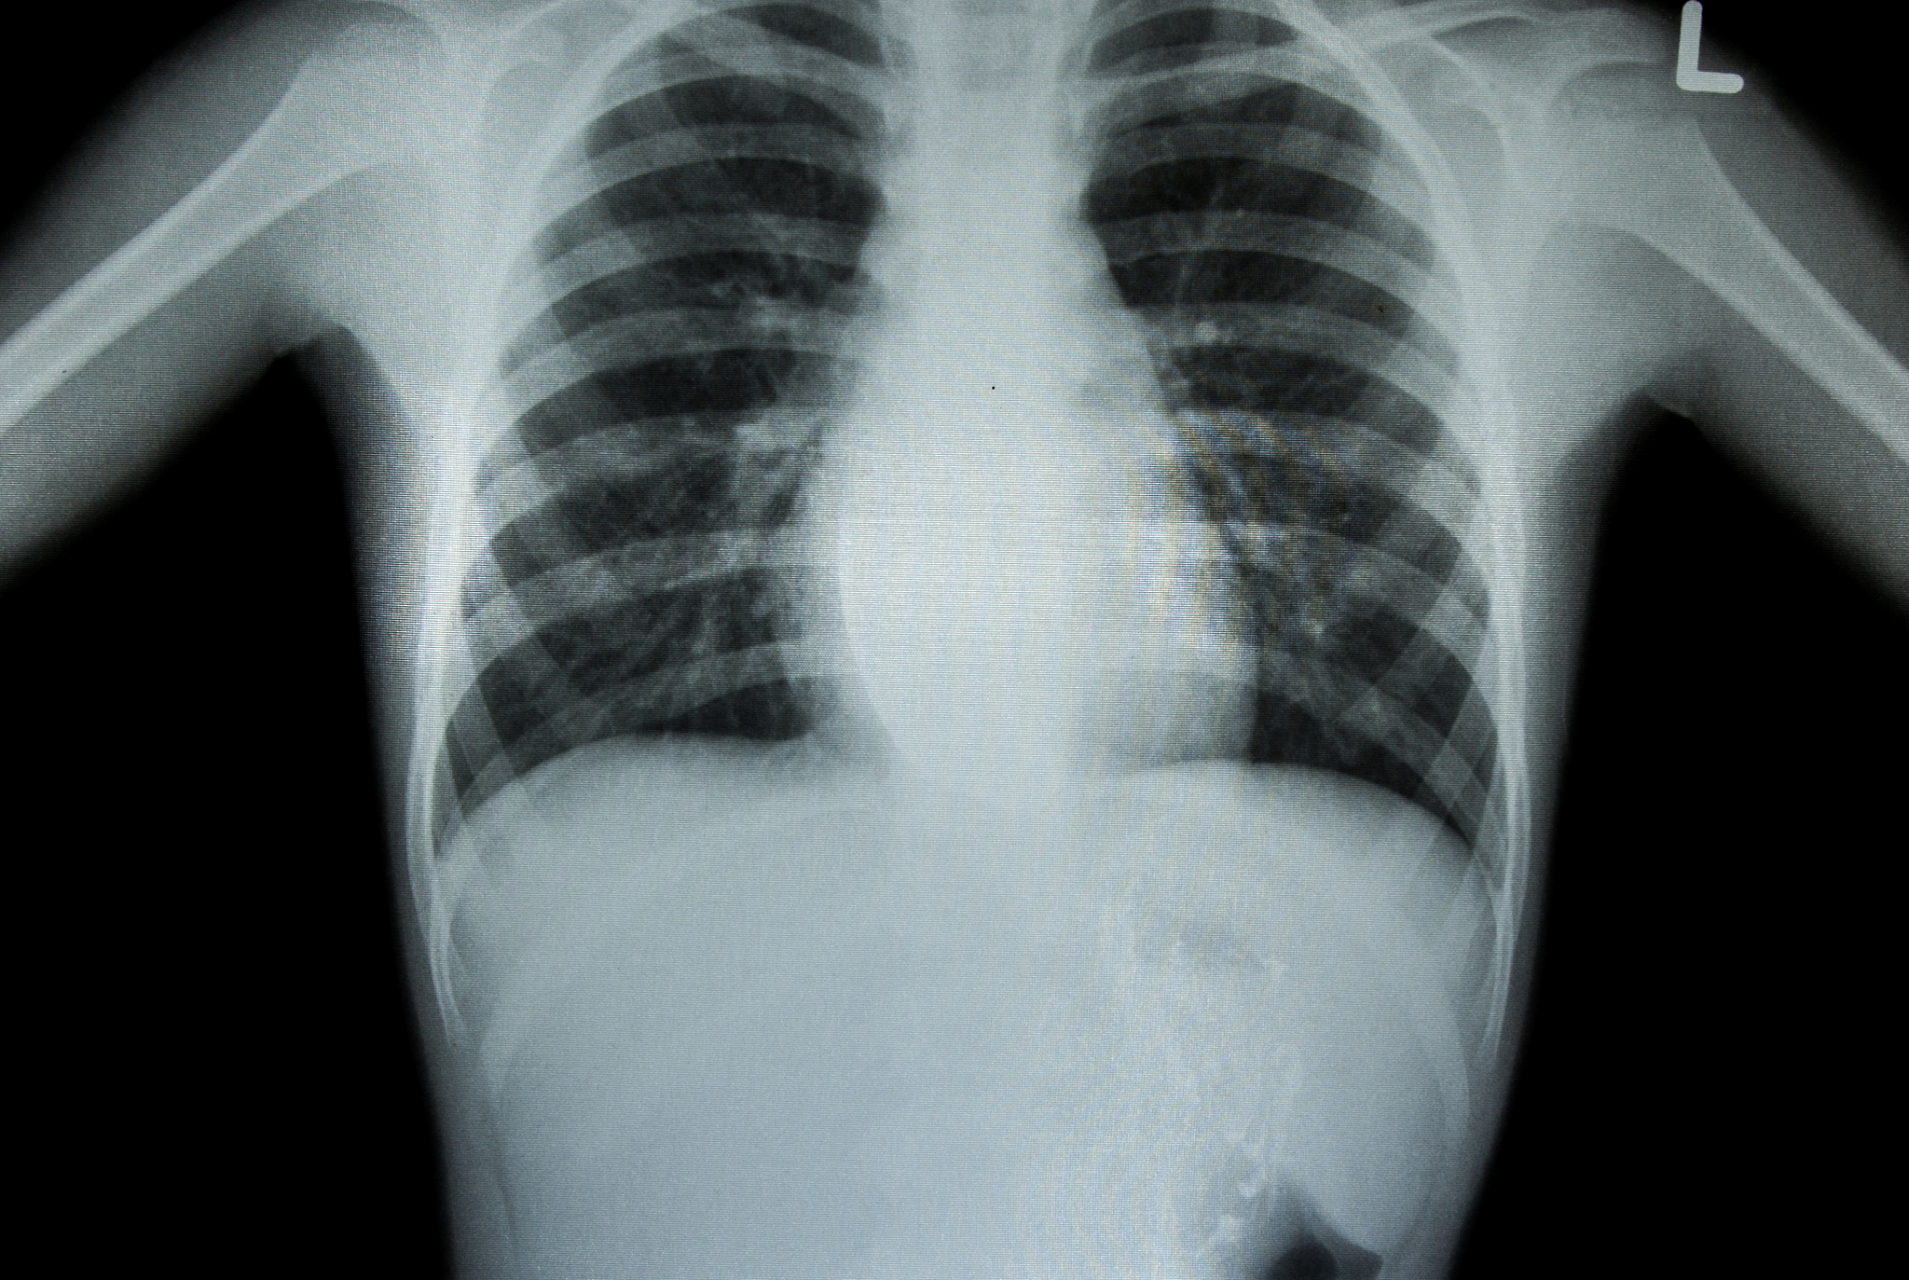 胸部x光检查:如何准备,进行和解读检查结果 胸部x光检查是一种非常